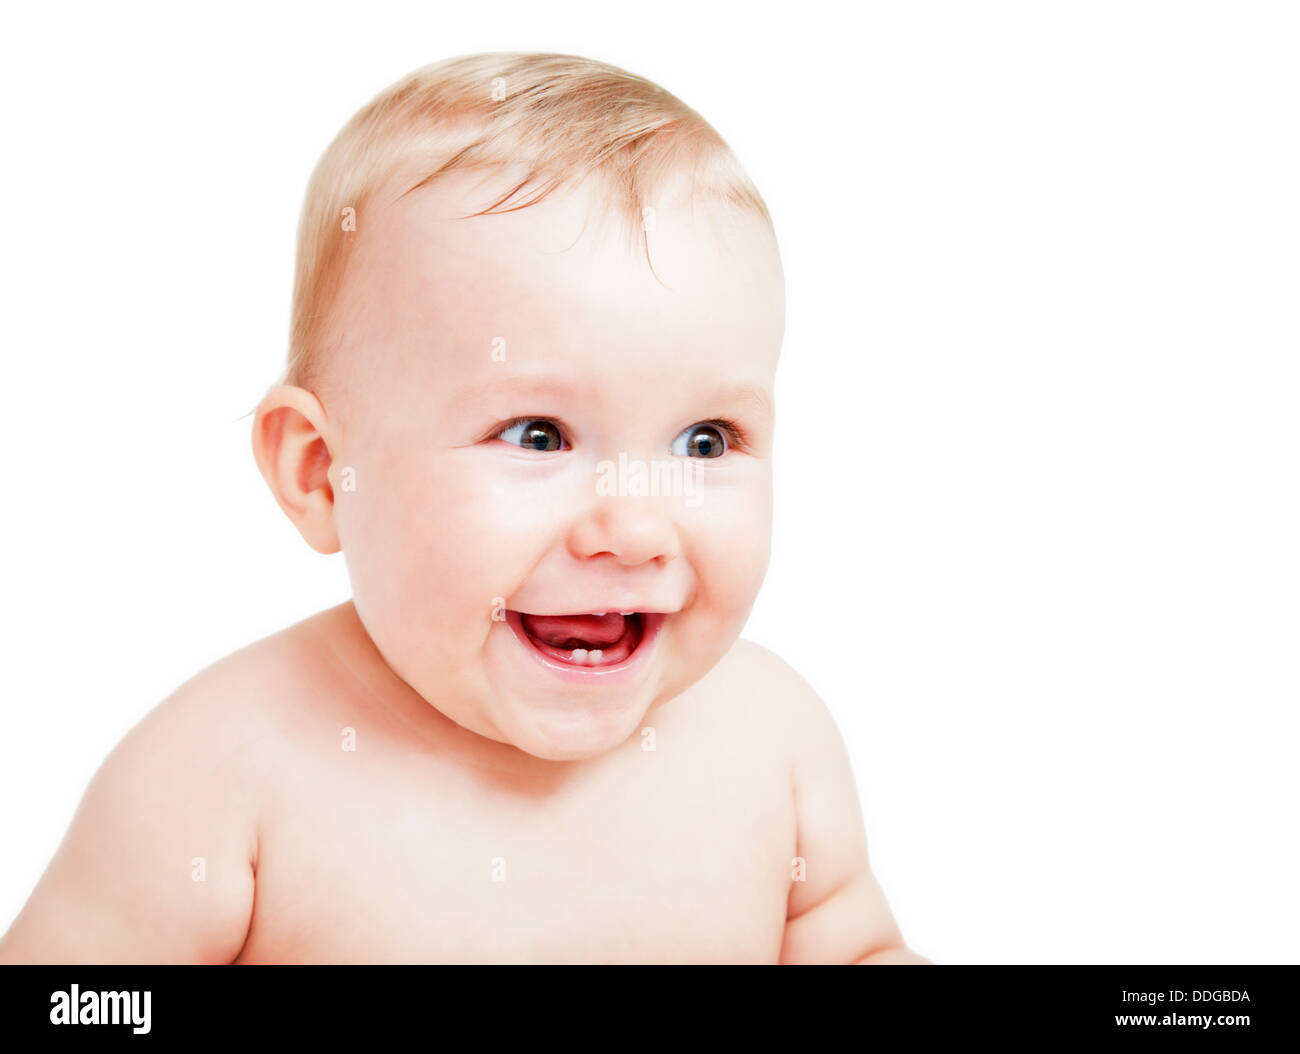 Lindo bebé feliz sonriente / riendo Foto de stock